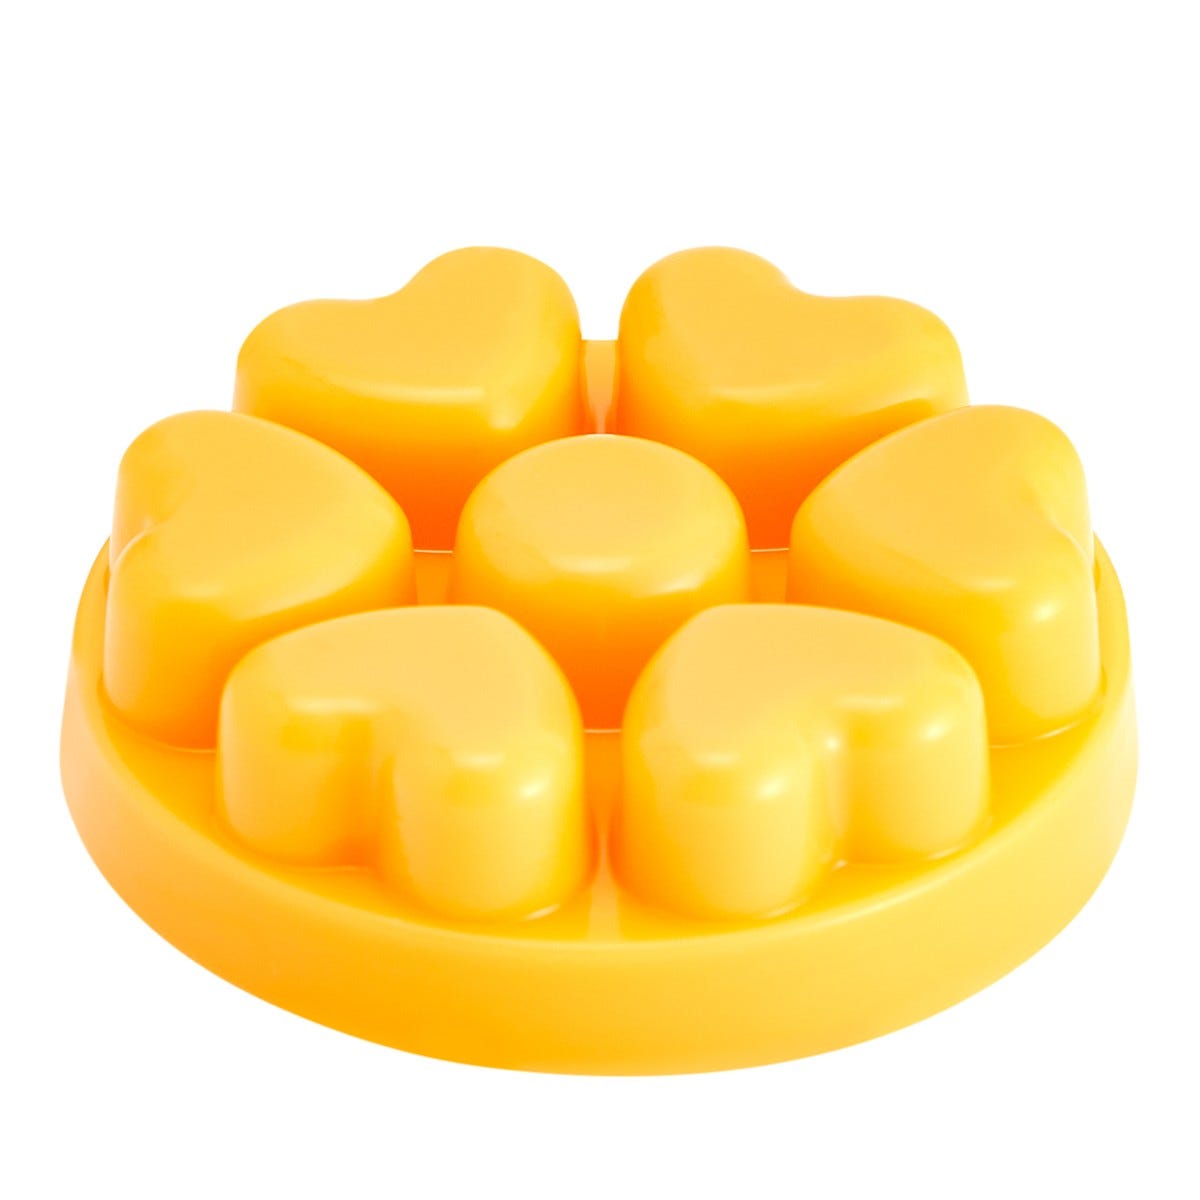 Sweet Citrus & Daisy Scent Plus® Heart Wax Melts - PartyLite US